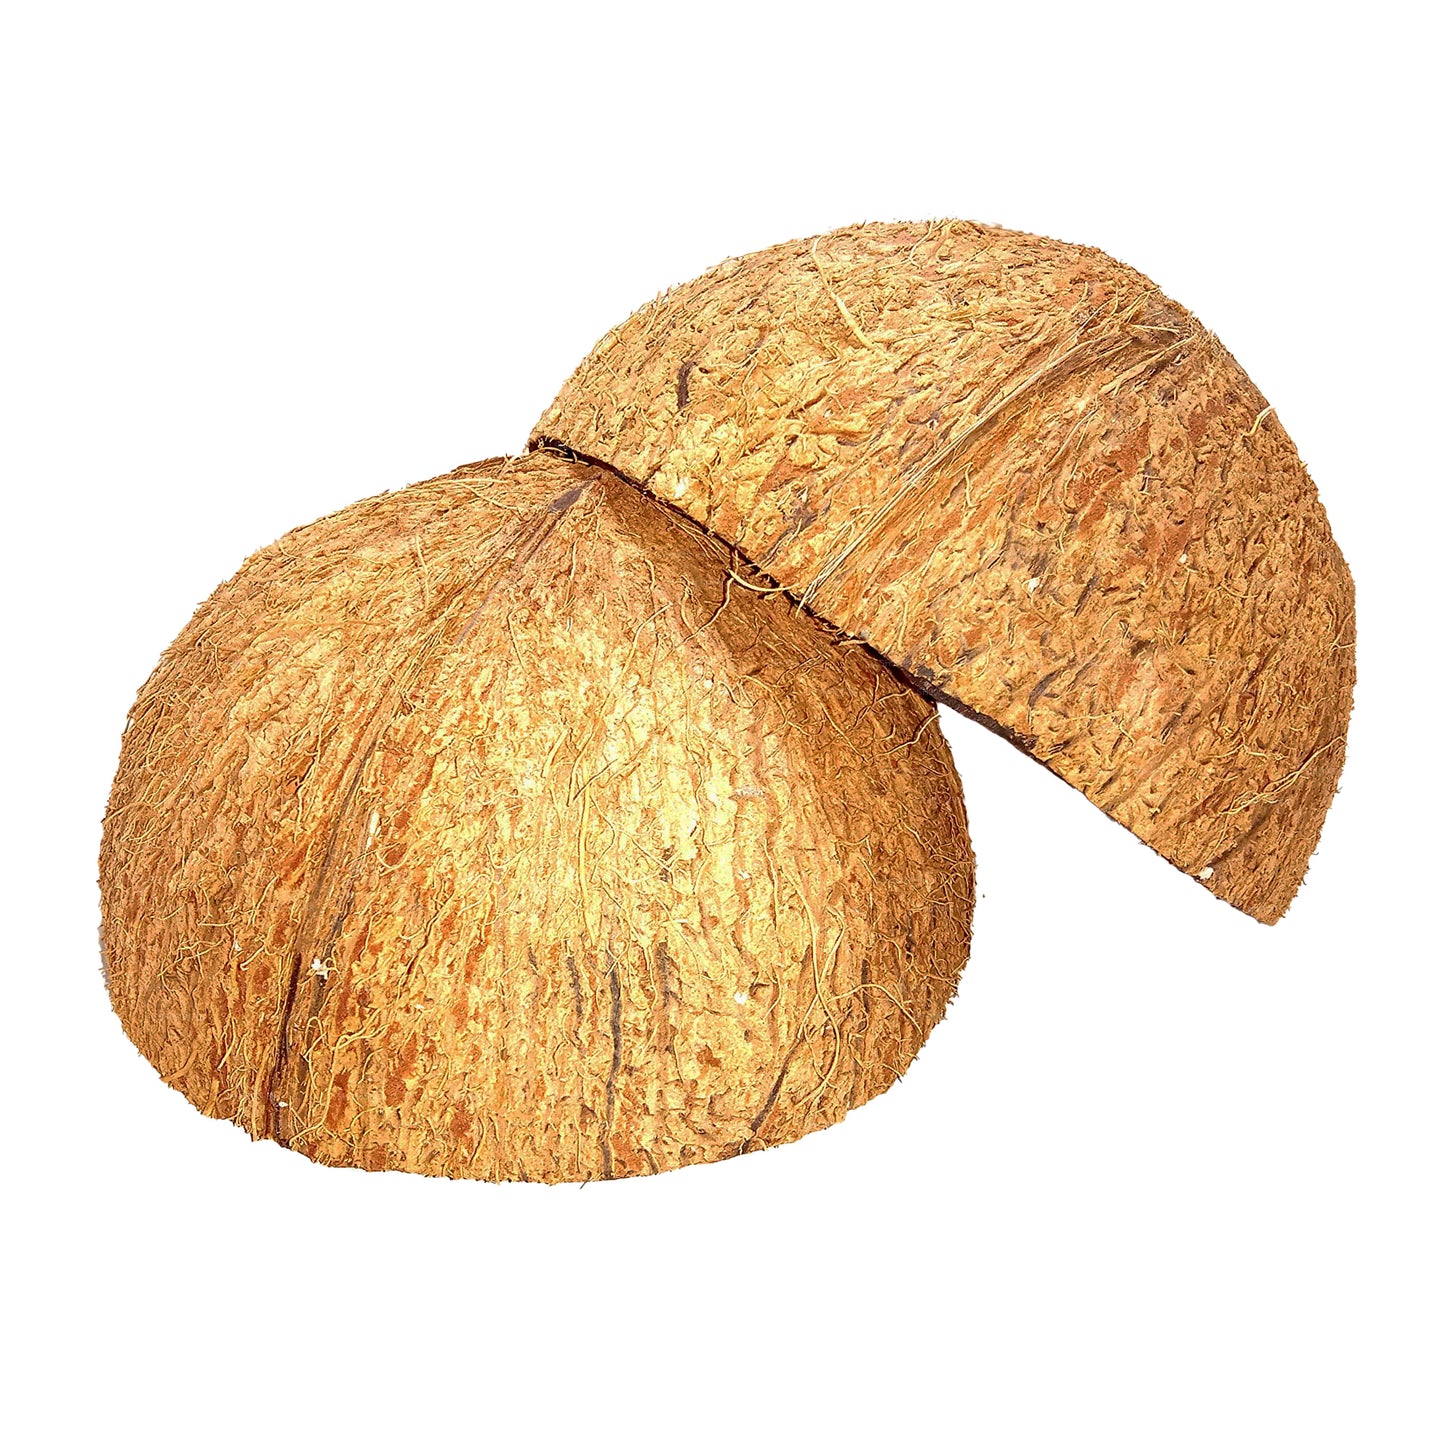 Kokosnootschaalhelften (2 stuks)